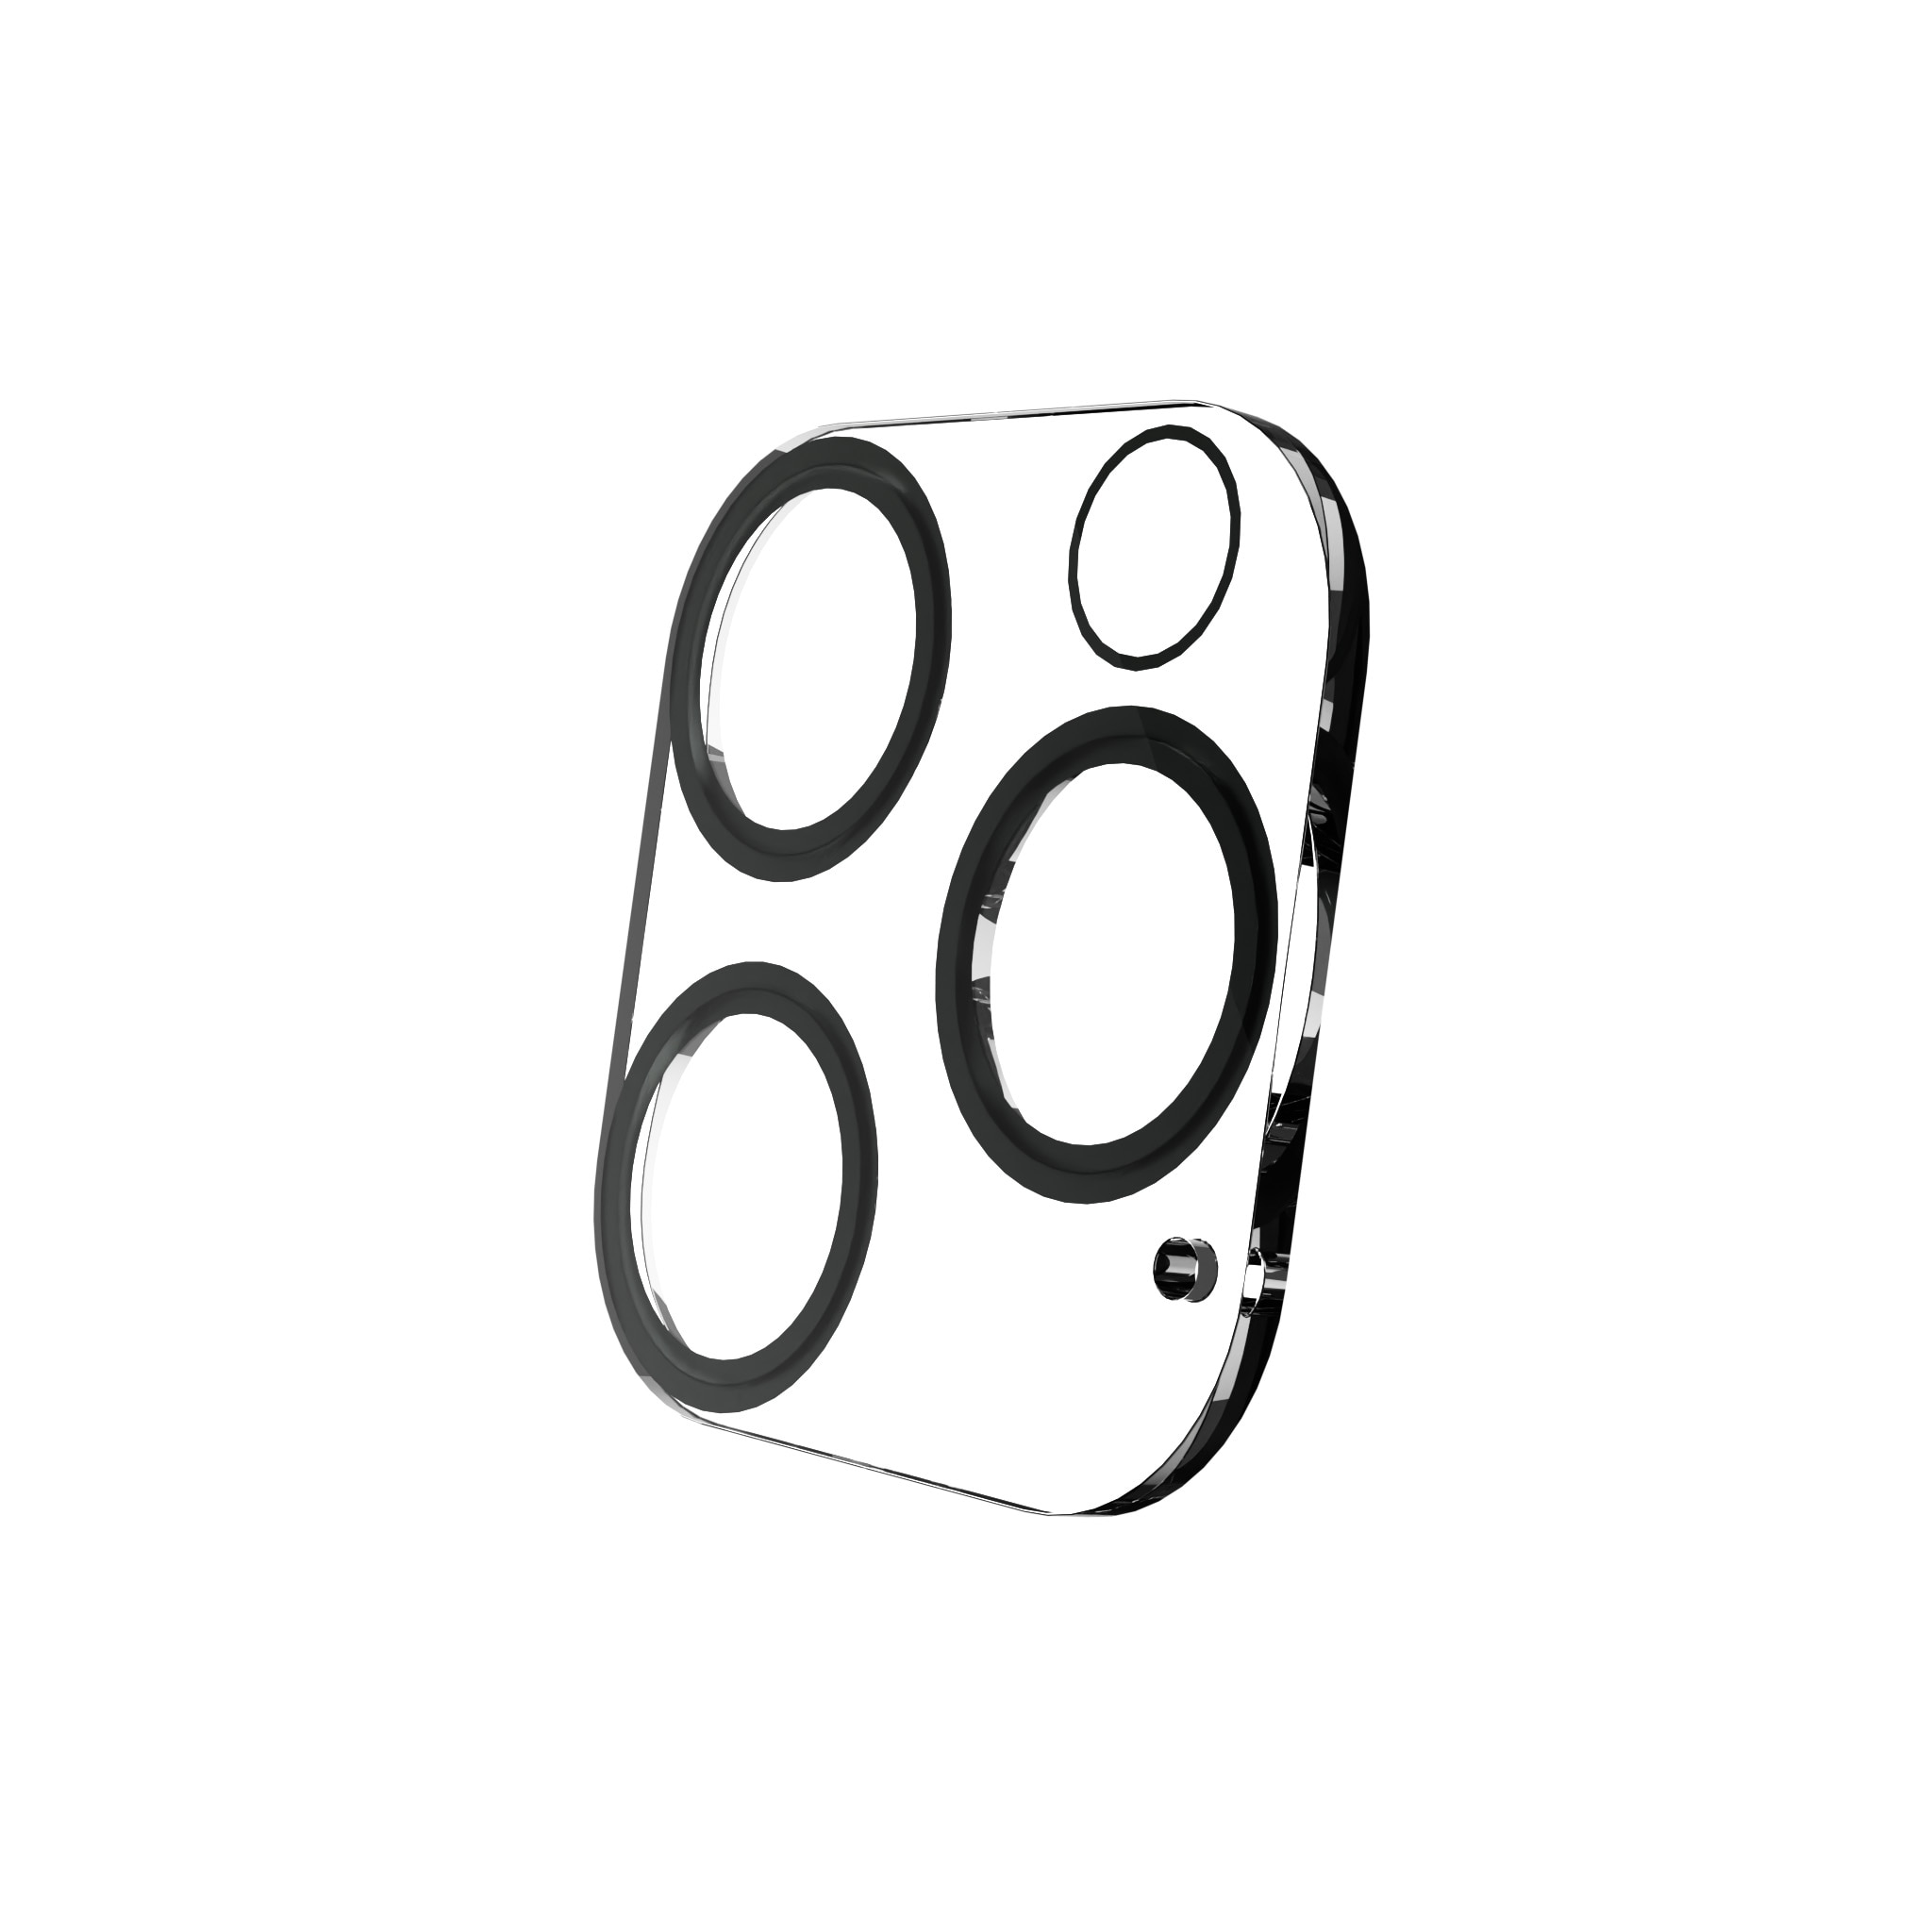 Protecteur de lentille Exoglass iPhone 15